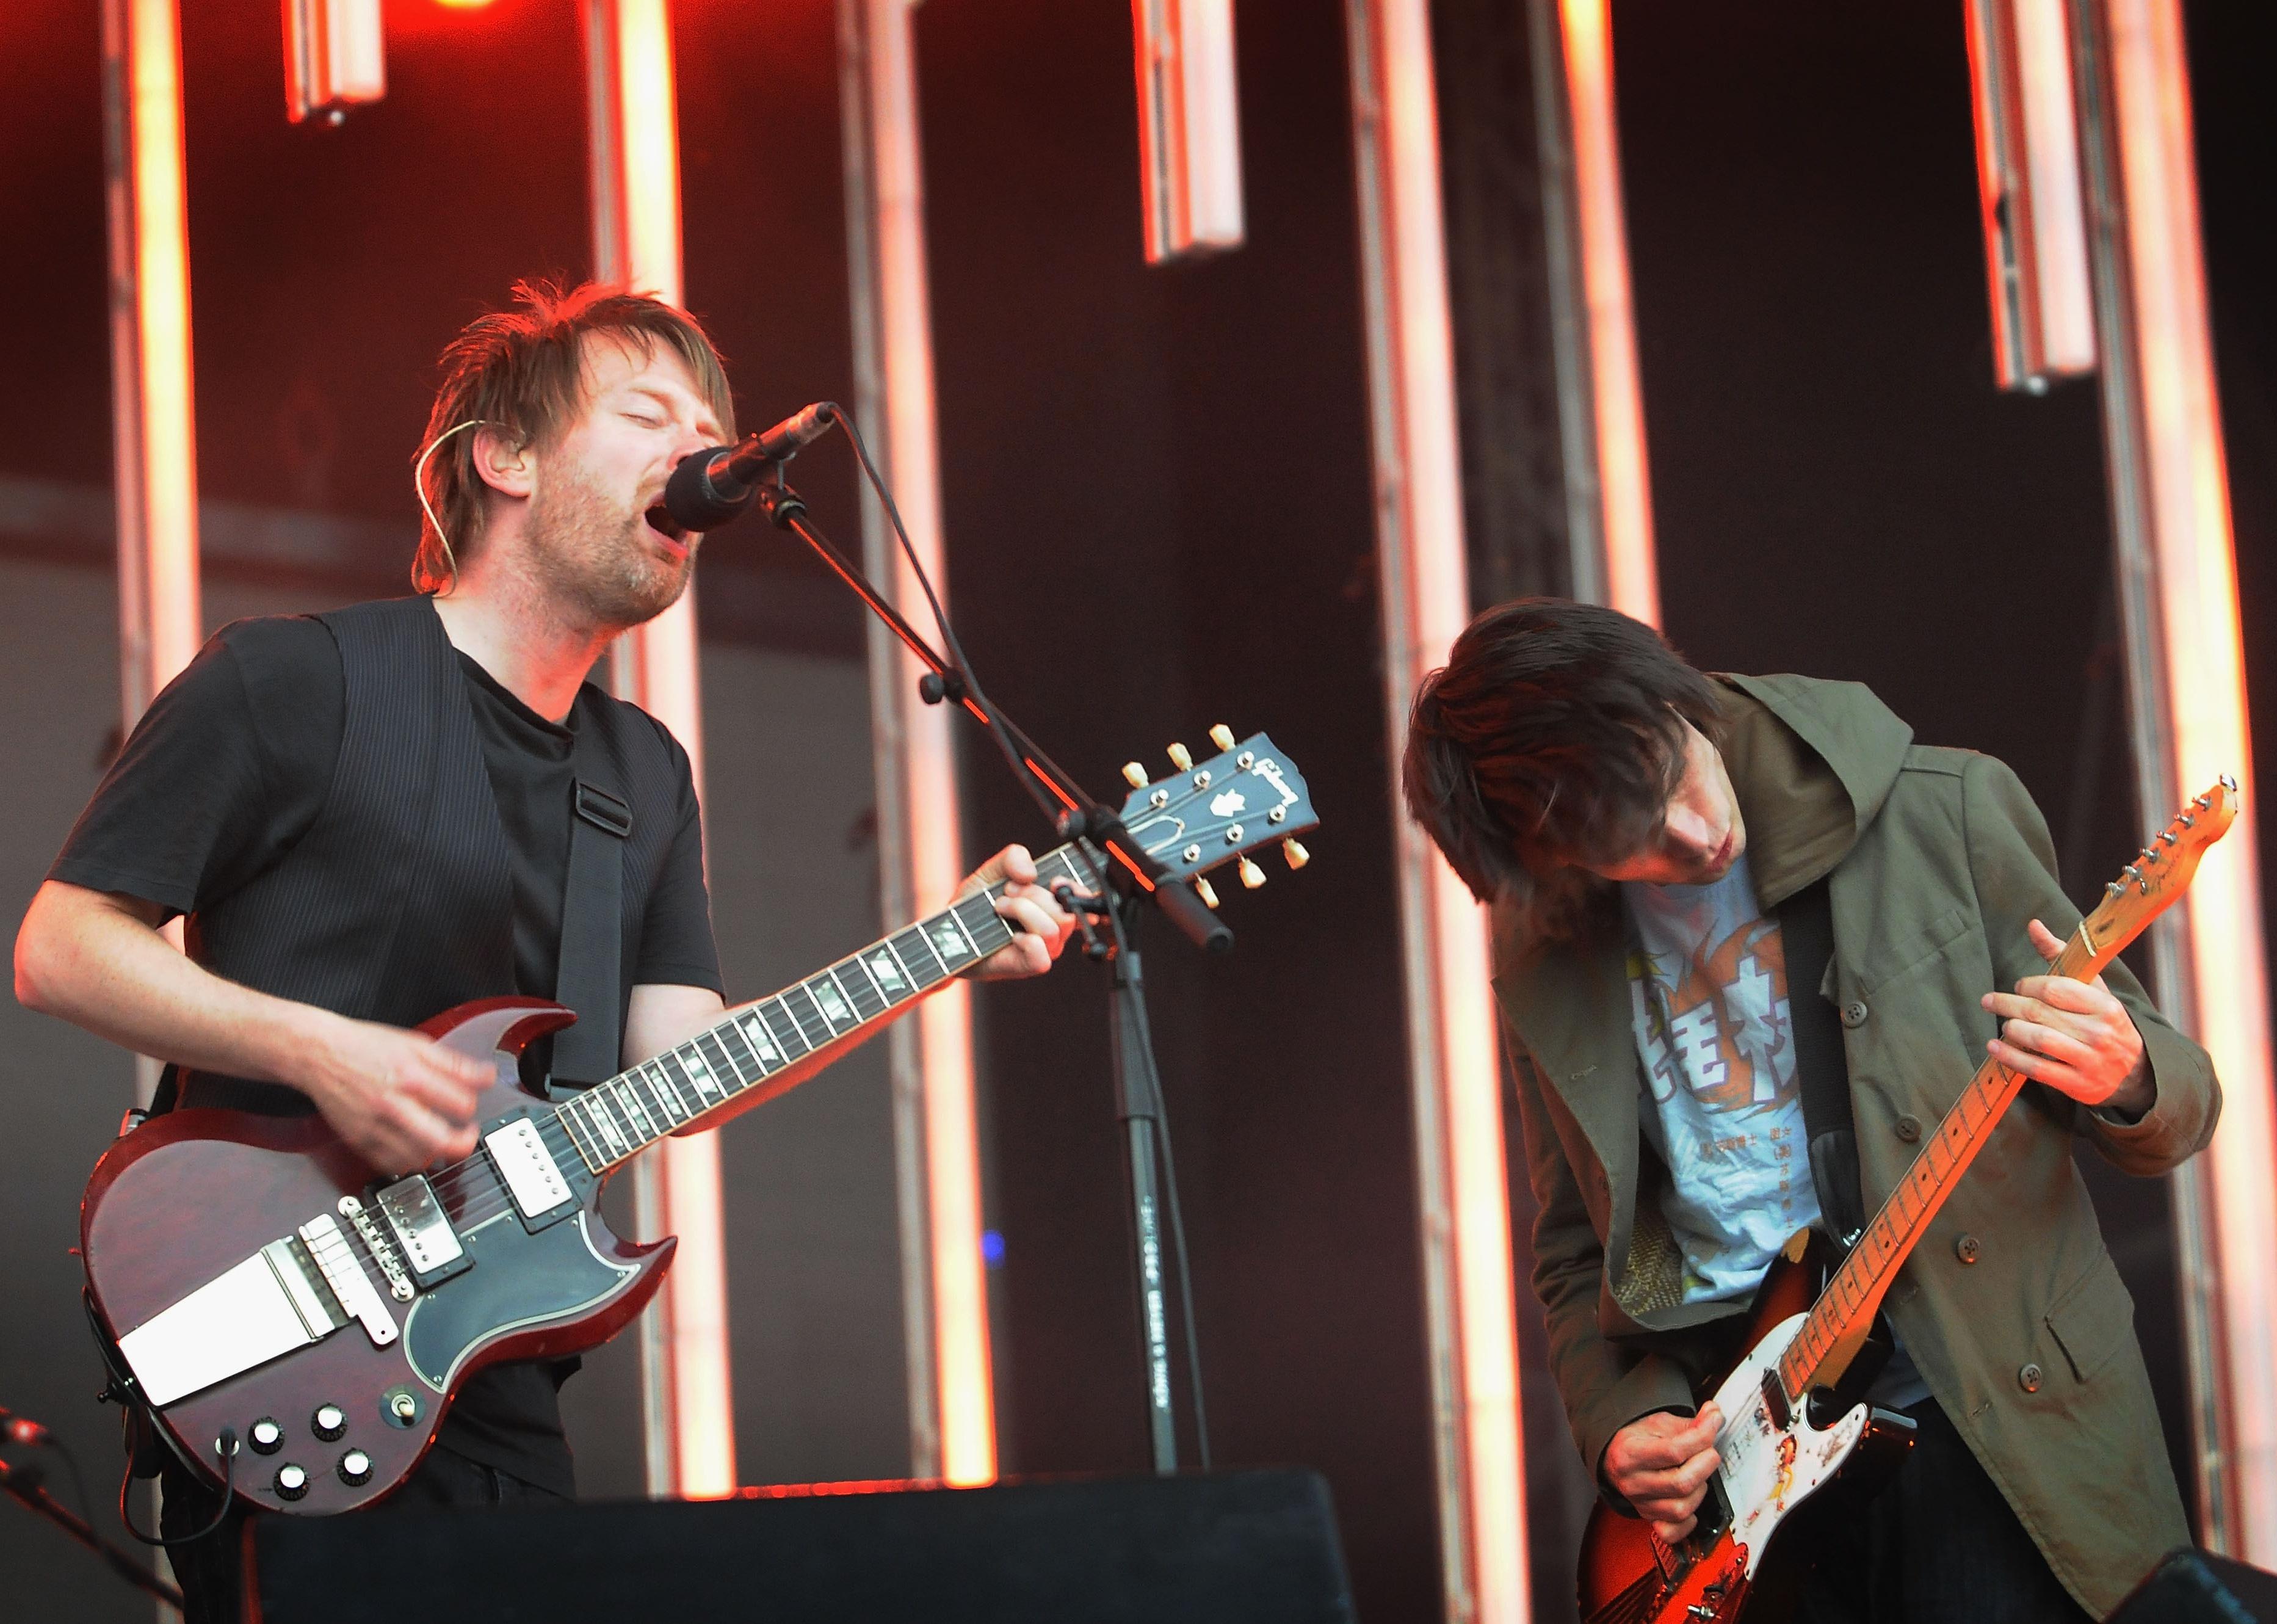 nachrichten Thom Yorke und Jonny Greenwood von Radiohead treten auf der Bühne auf.